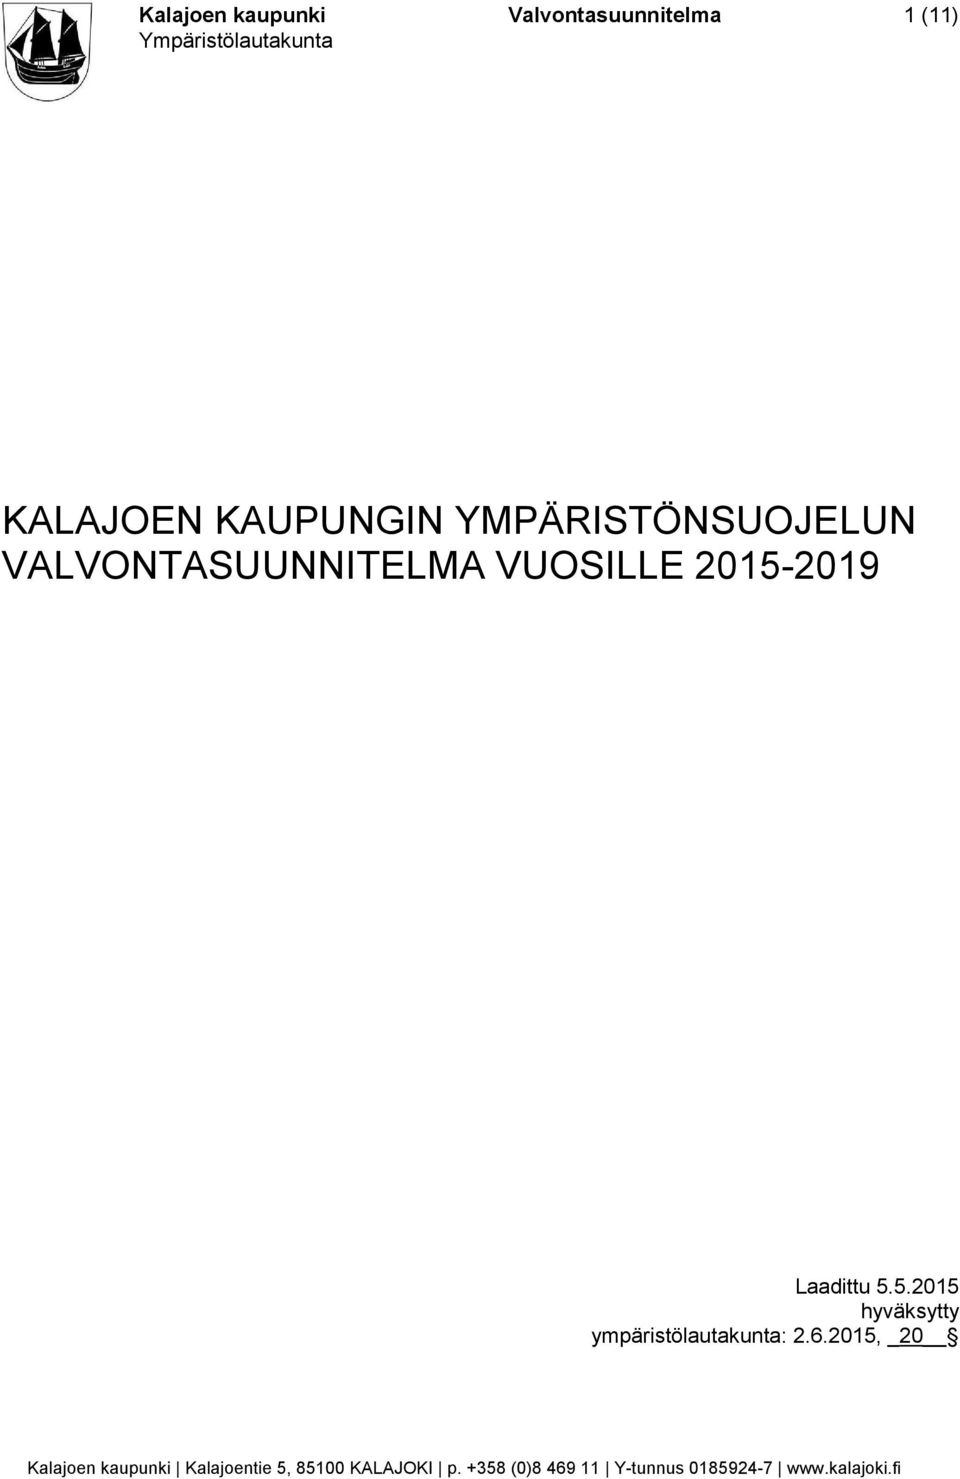 VALVONTASUUNNITELMA VUOSILLE 2015-2019